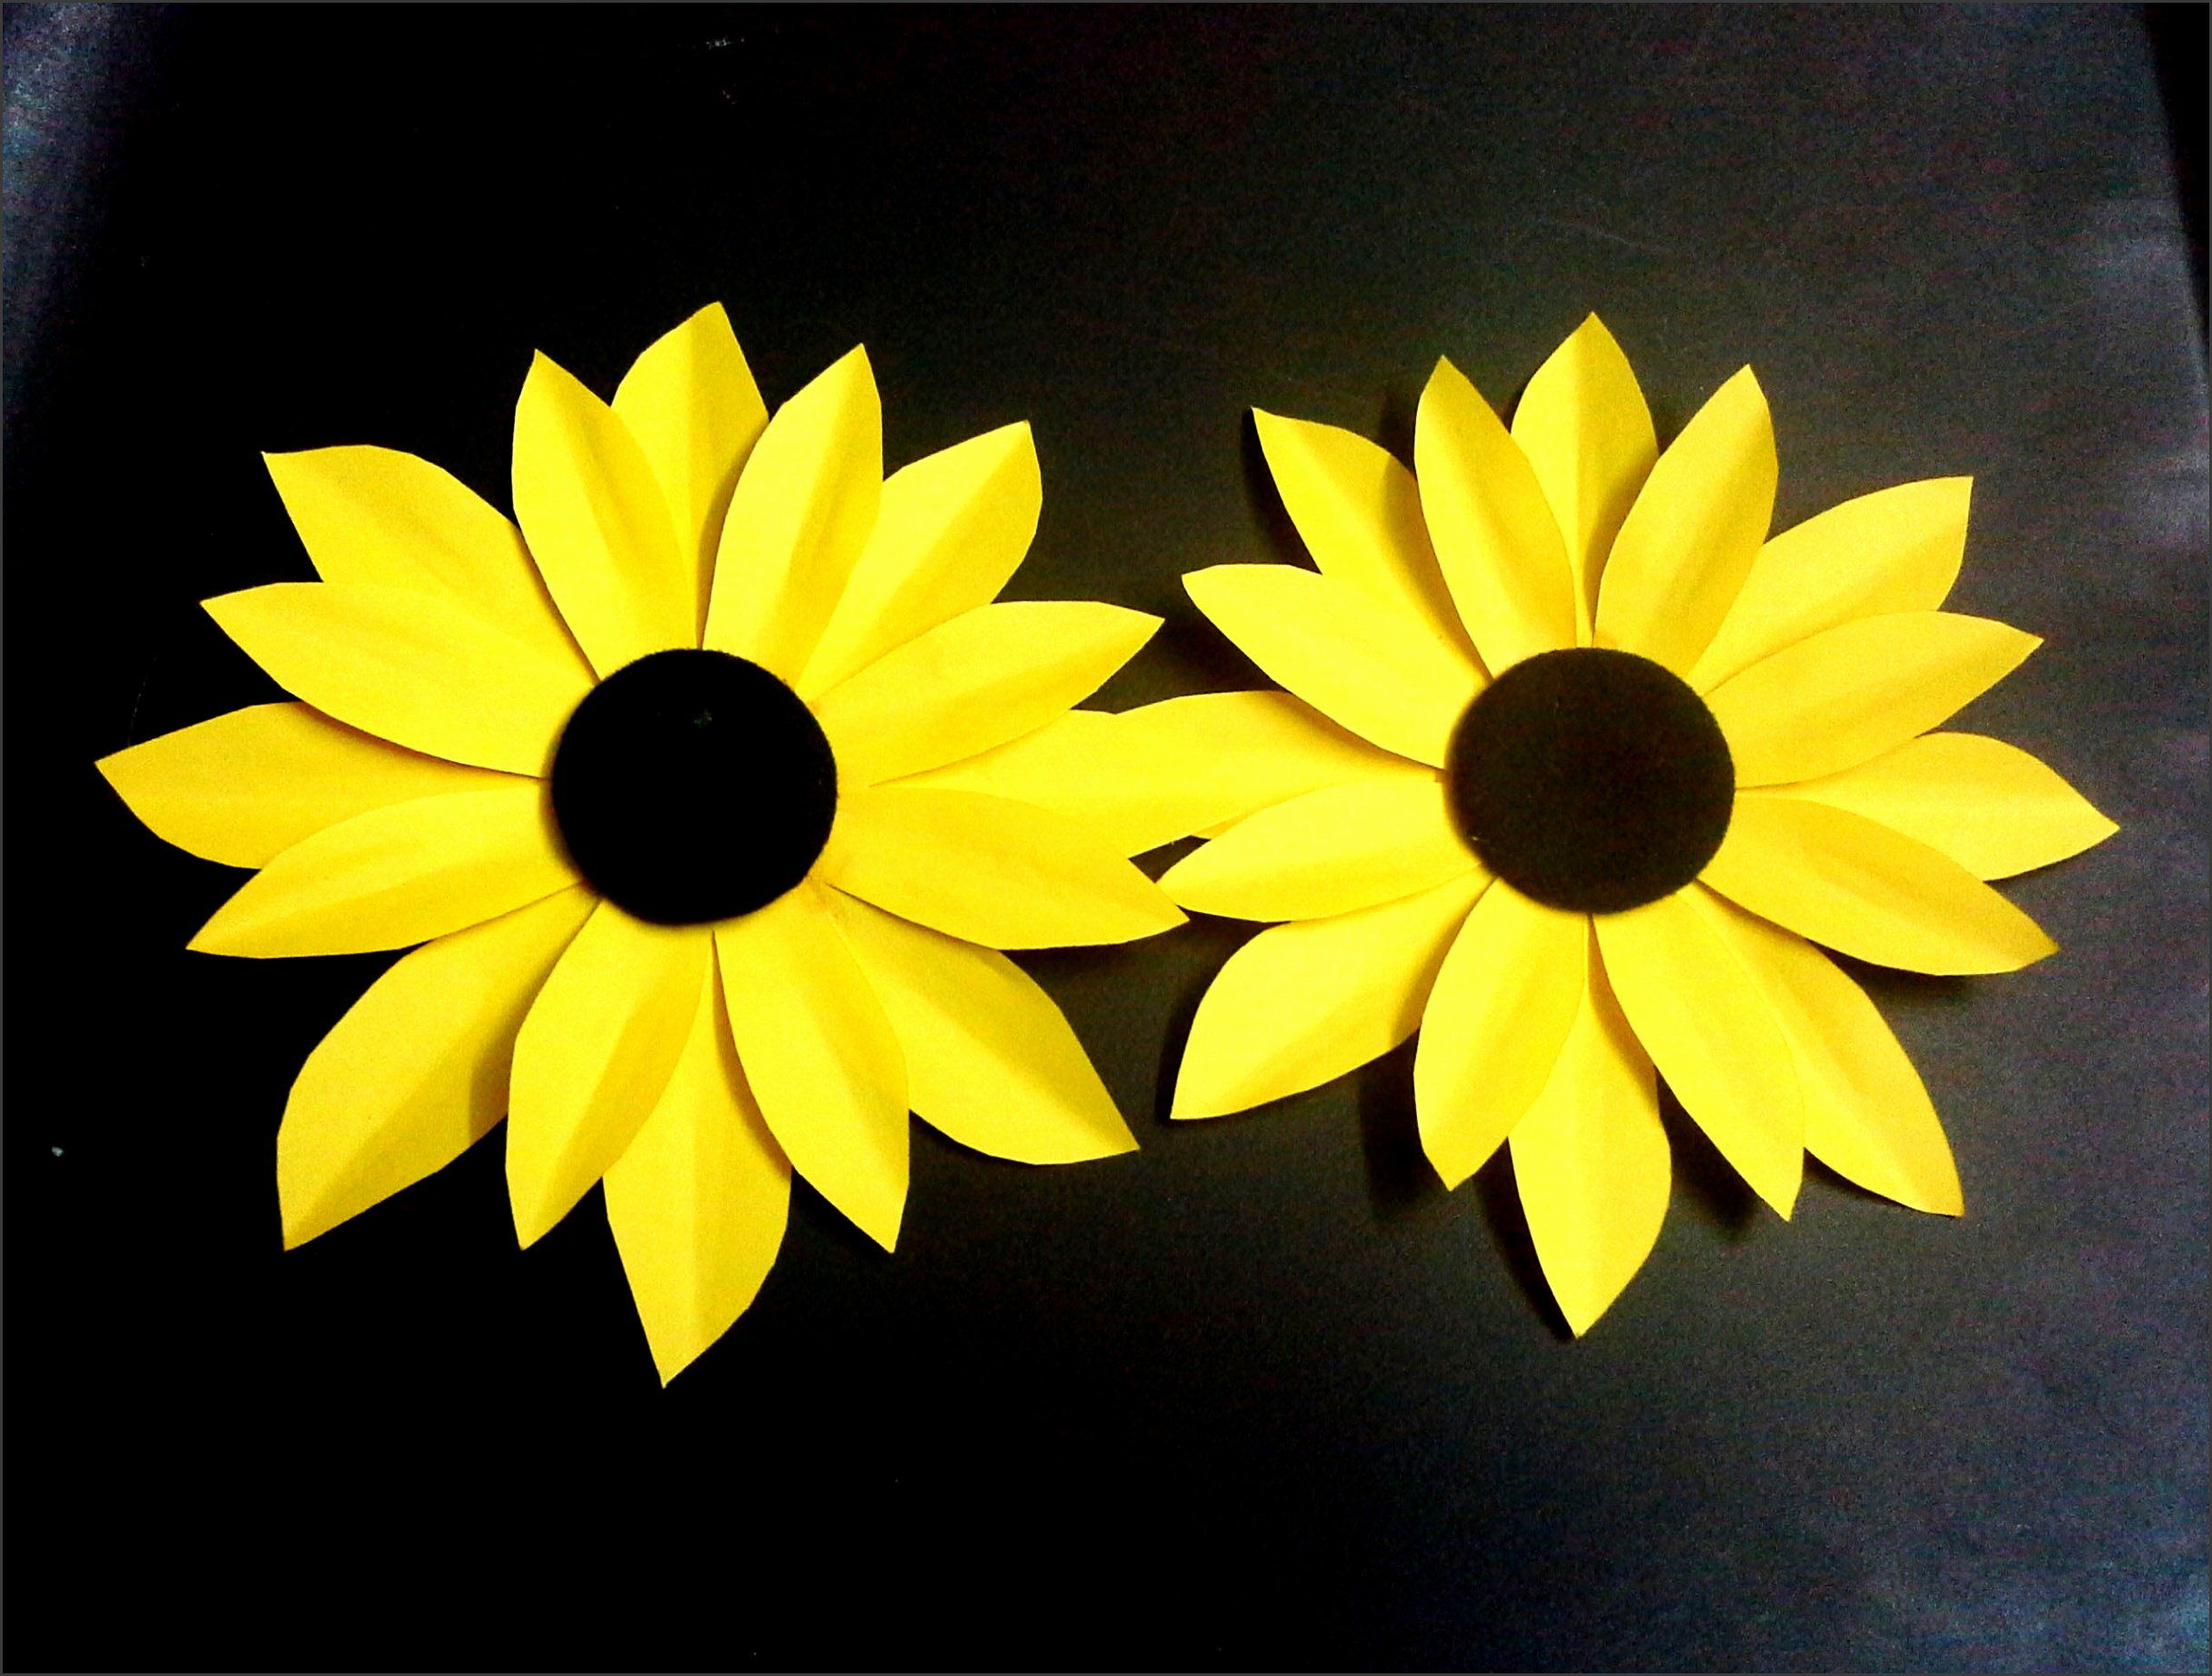 6-sunflower-template-preschool-sampletemplatess-sampletemplatess